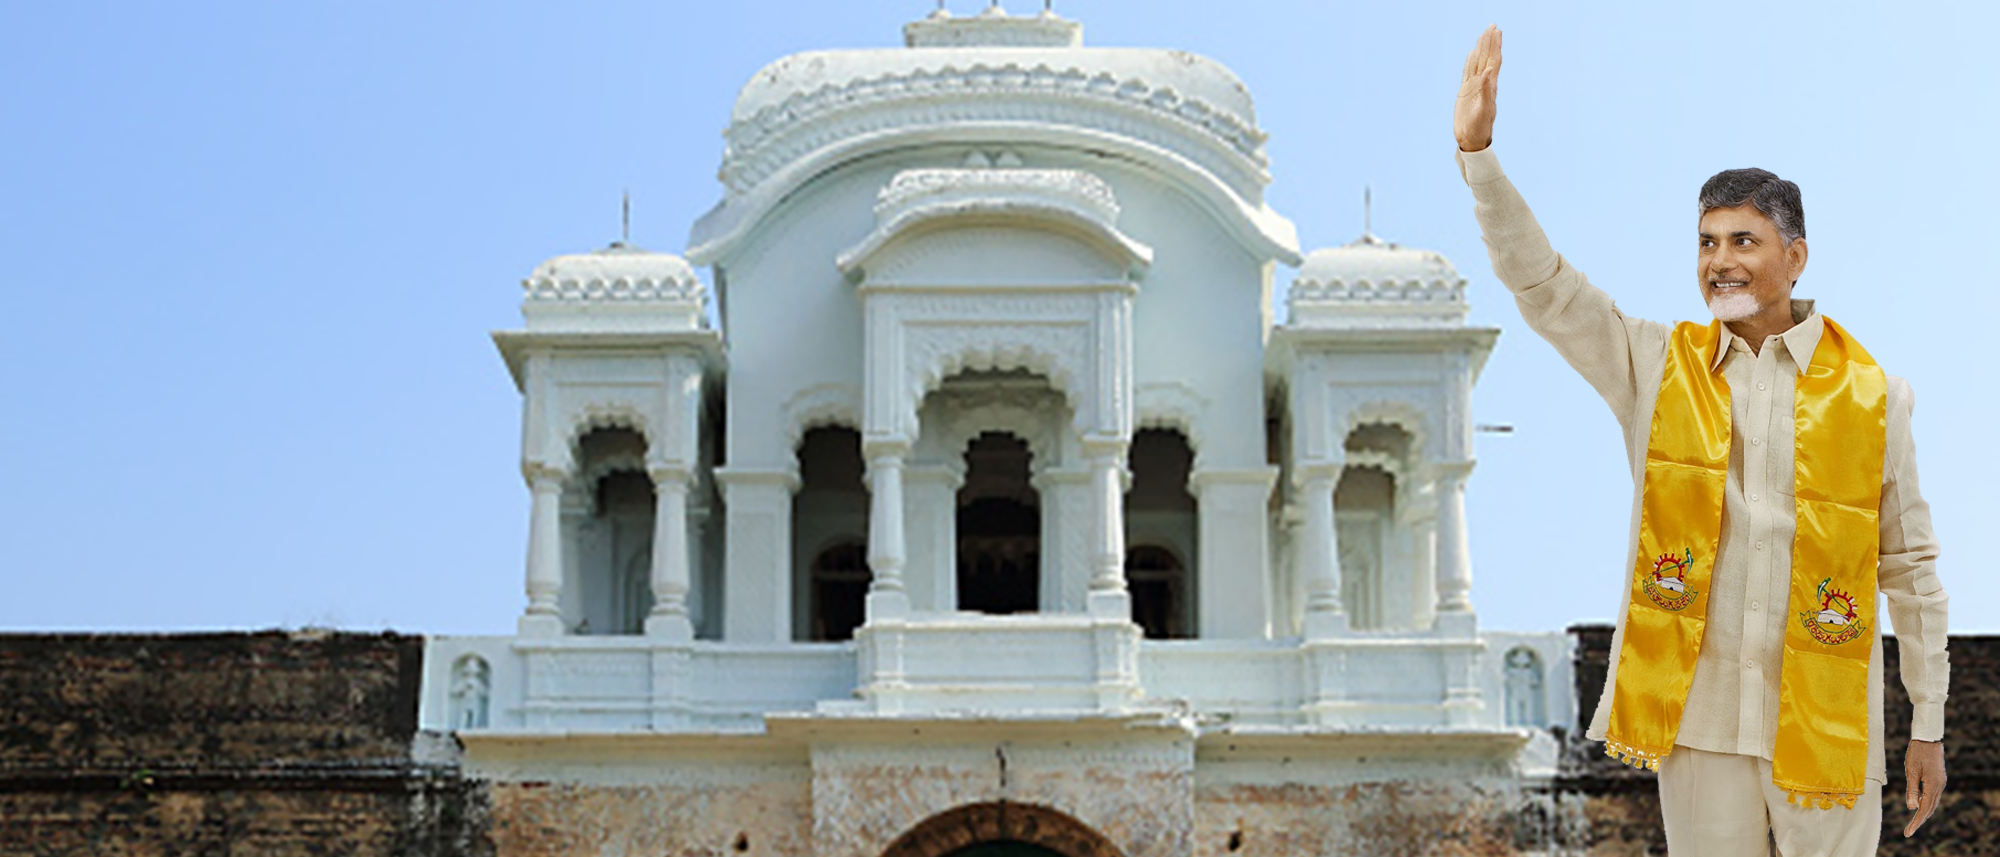 CBN Vijayanagarm